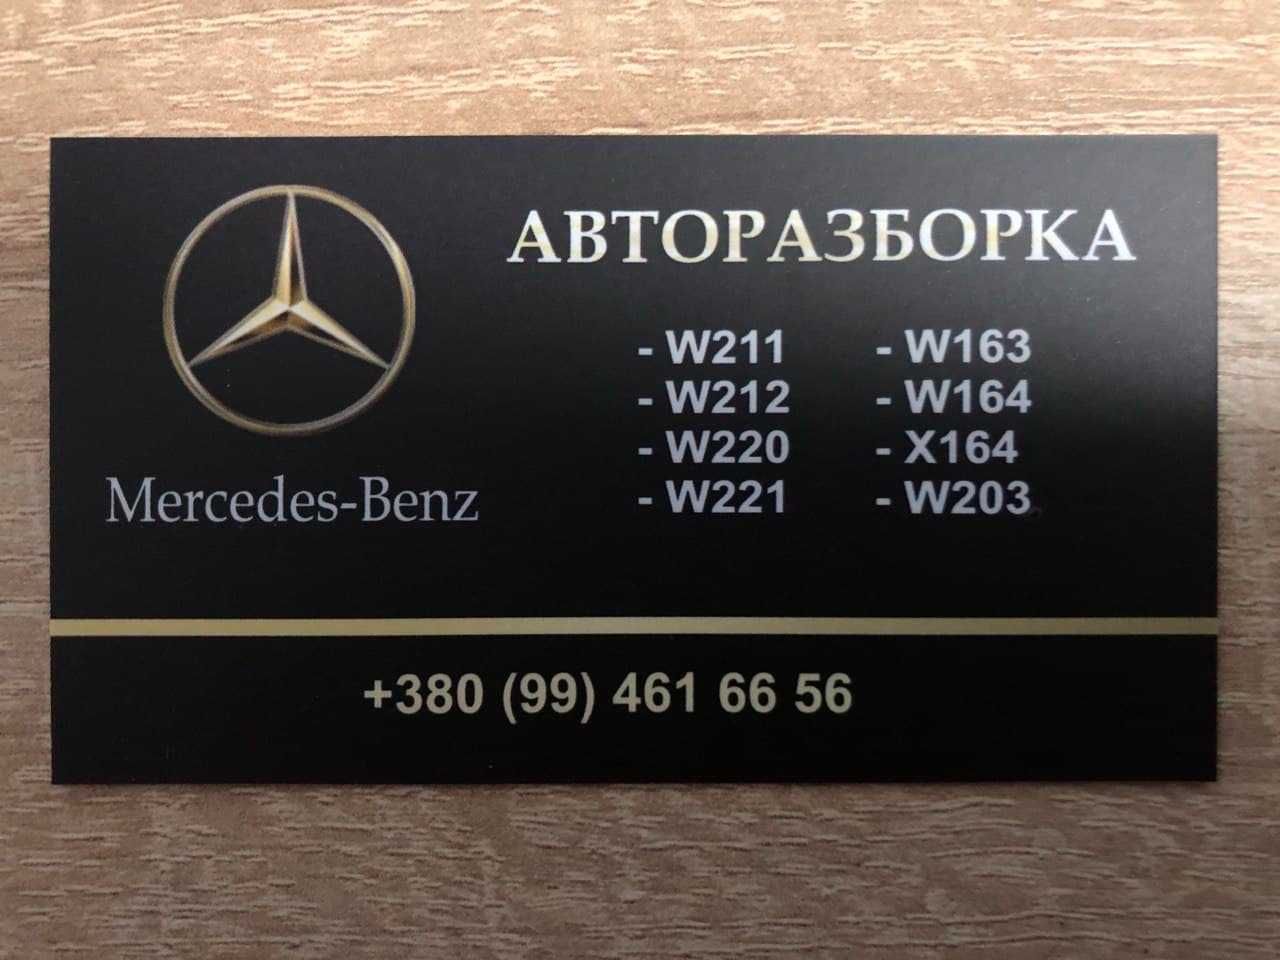 Бампер АвтоРазборка Mercedes w211 w221 w212 w164x164 АвтоРозборка Шрот